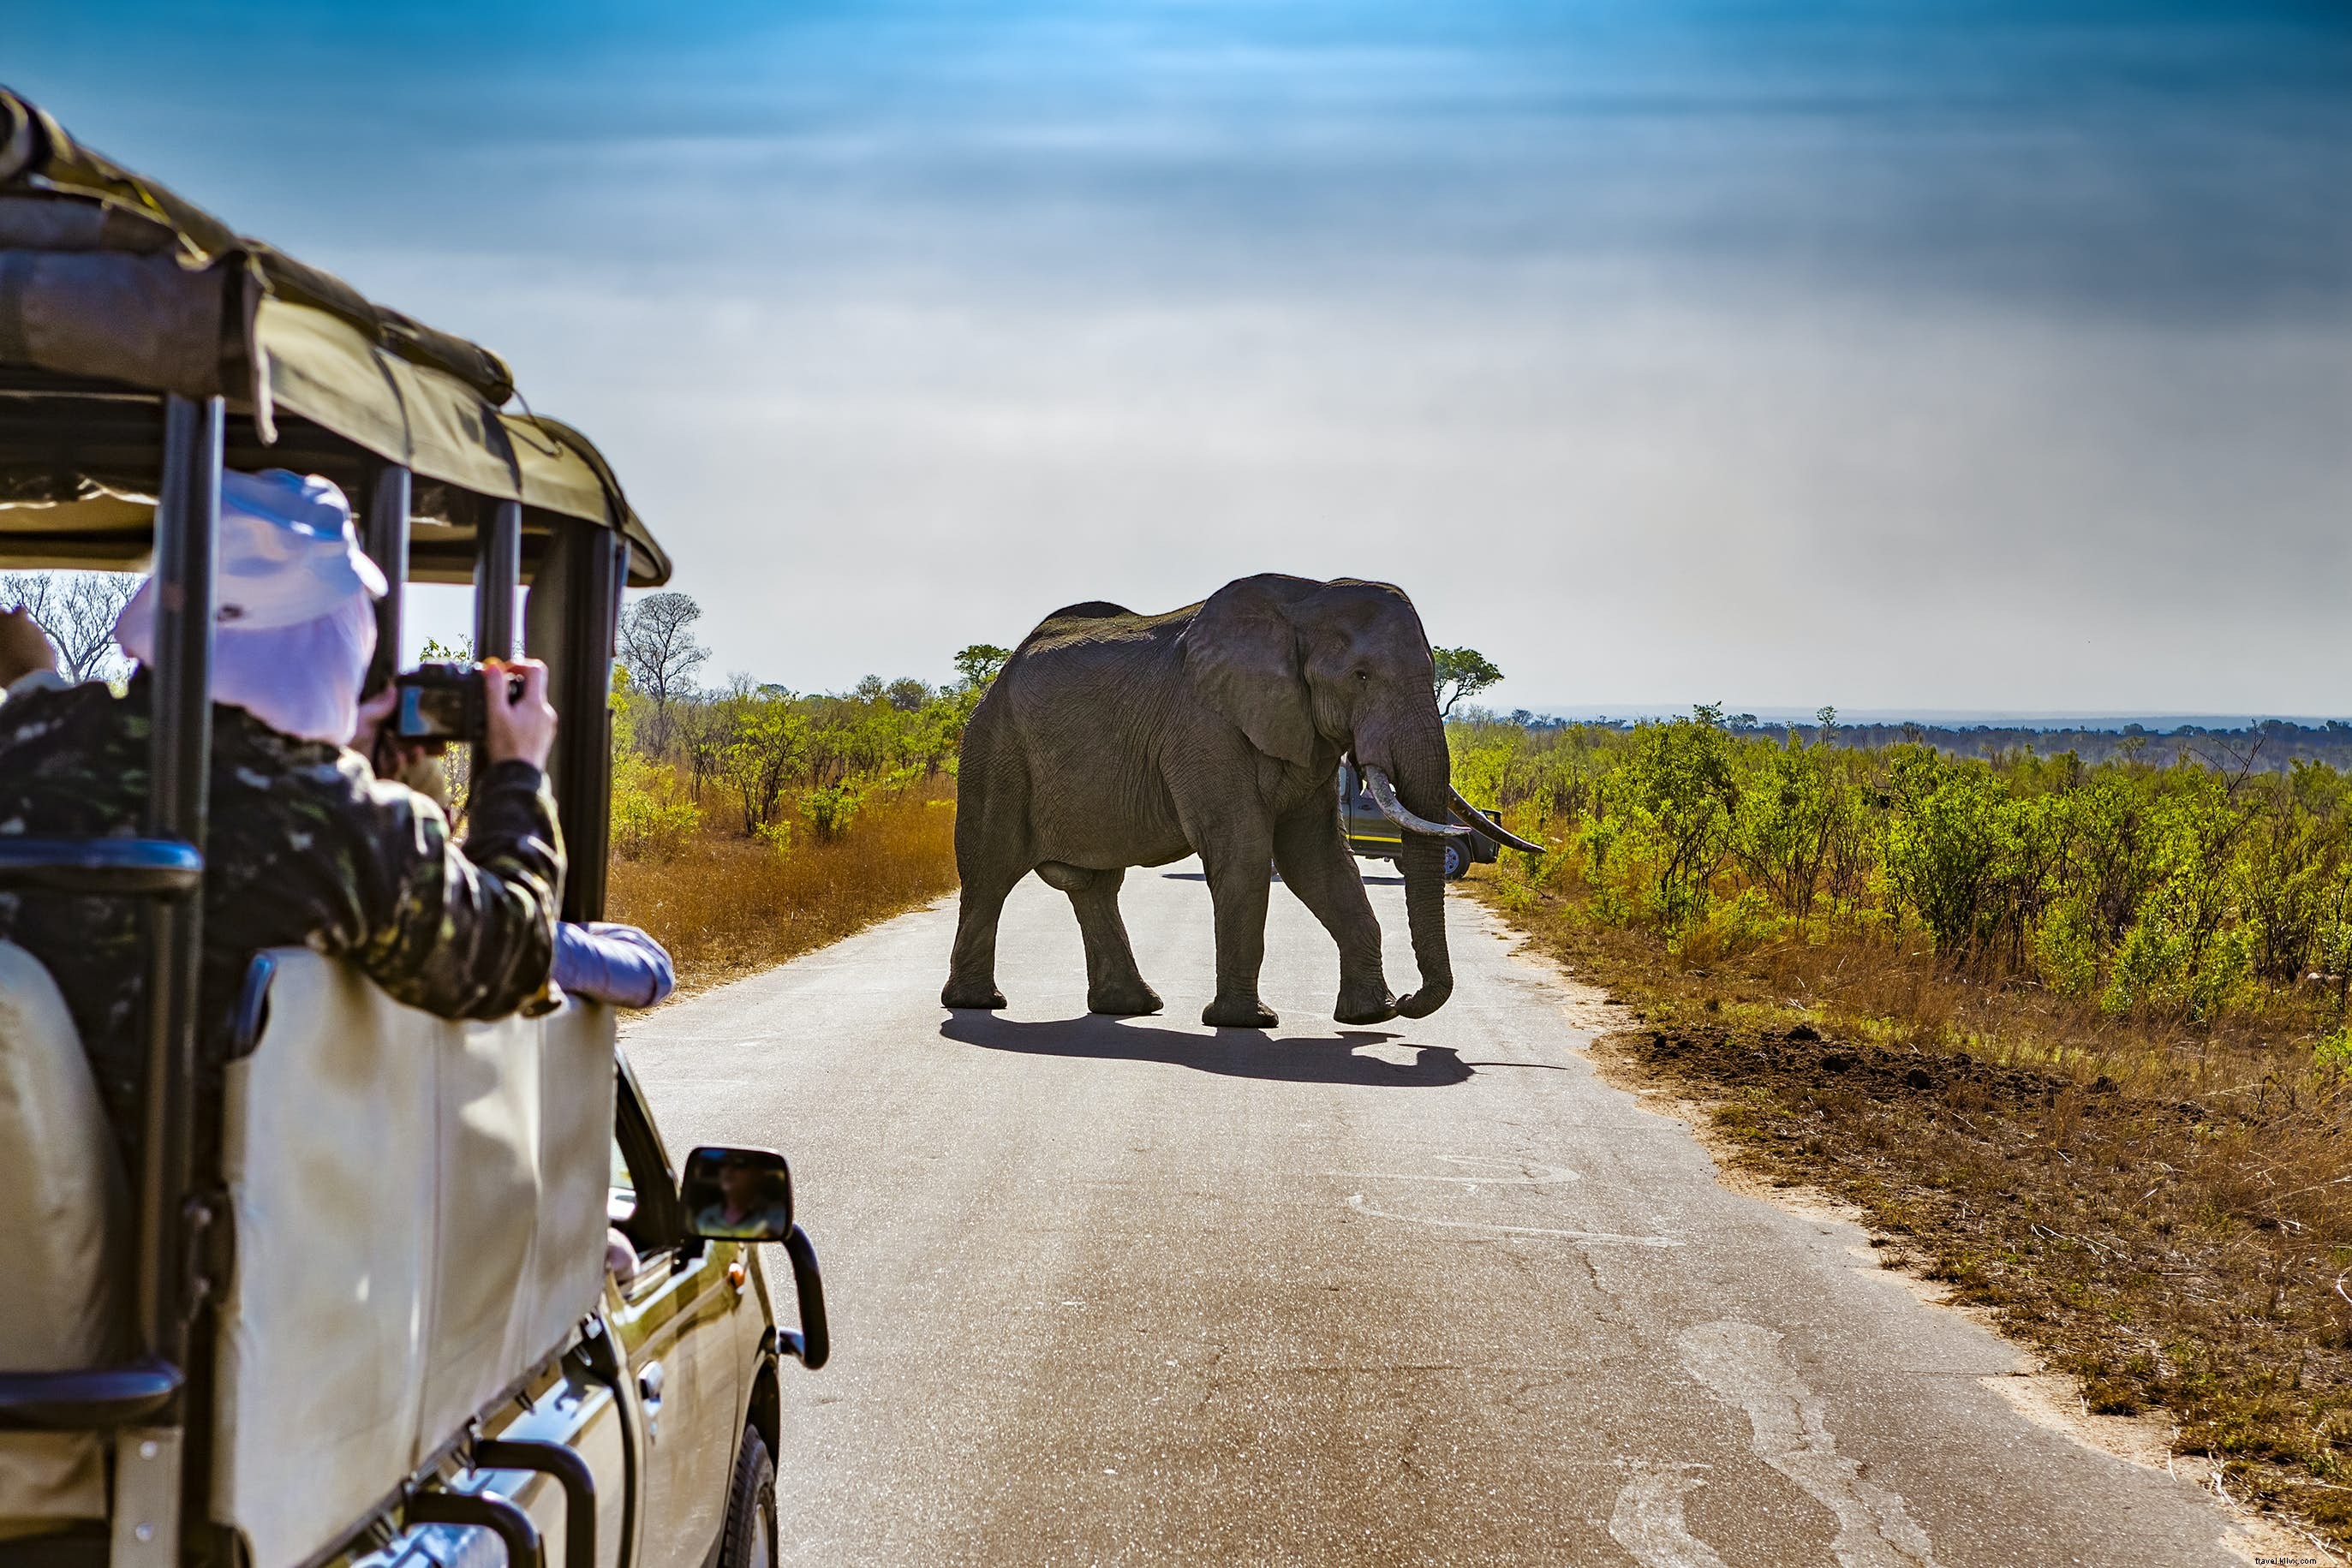 Safari Afrika Selatan untuk pemula:8 hal yang perlu diketahui sebelum Anda memesan 